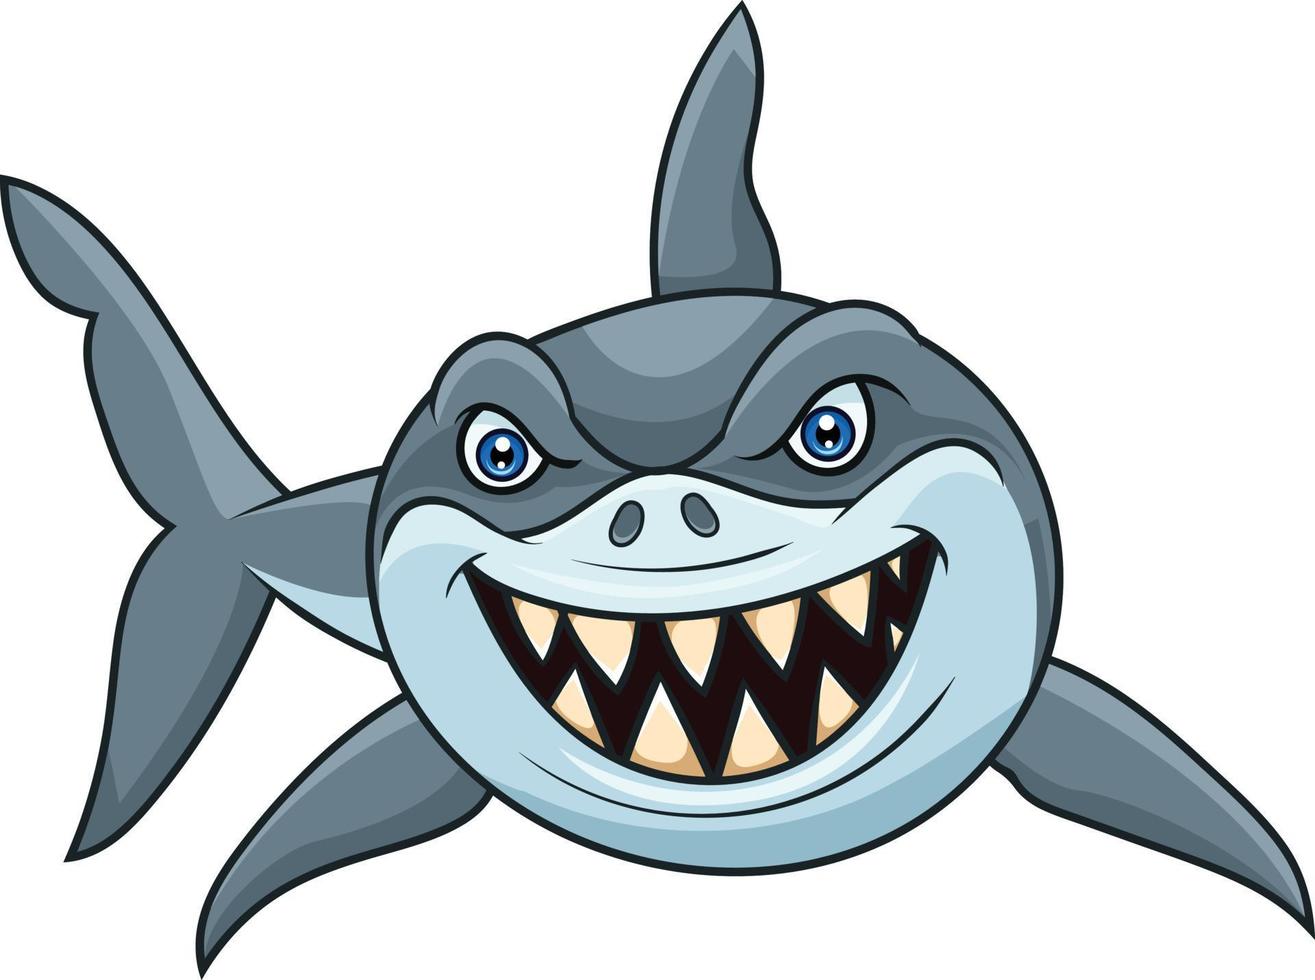 tiburón enojado de dibujos animados aislado sobre fondo blanco vector